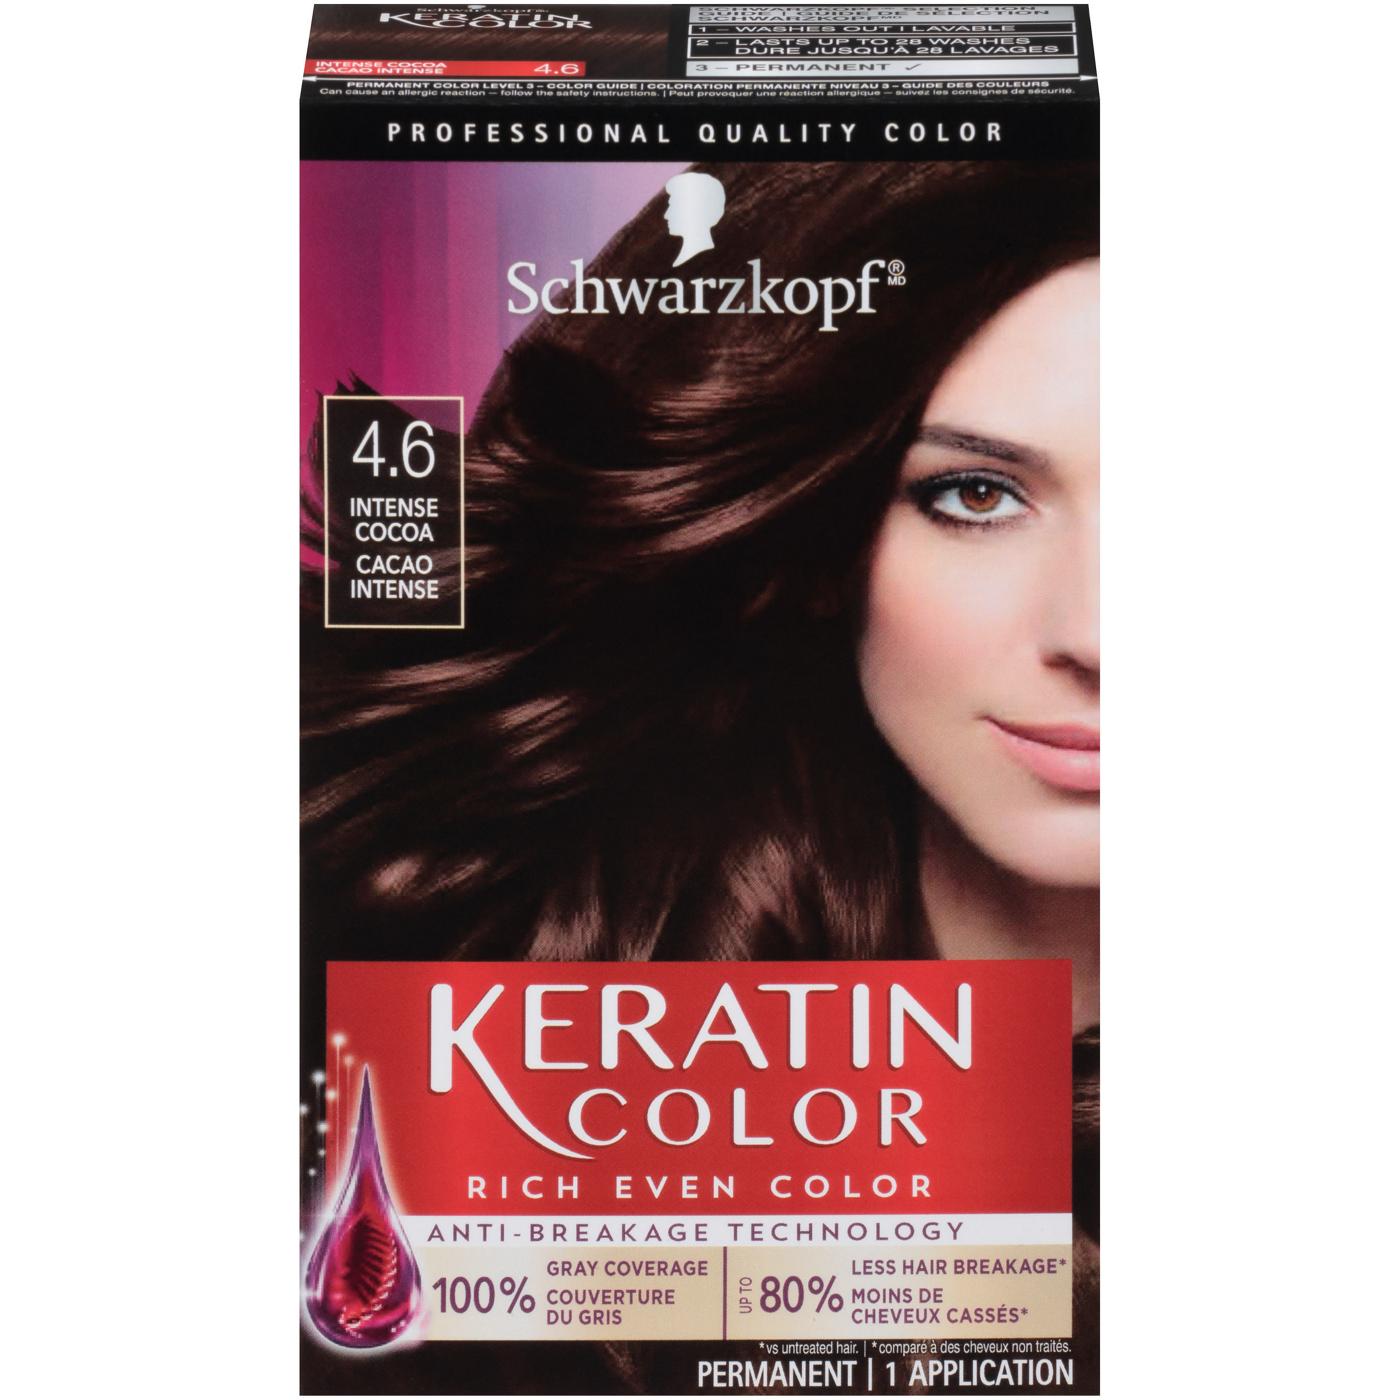 Schwarzkopf Keratin Color Permanent Hair Color Cream  Intense Cocoa - Shop  Hair Color at H-E-B